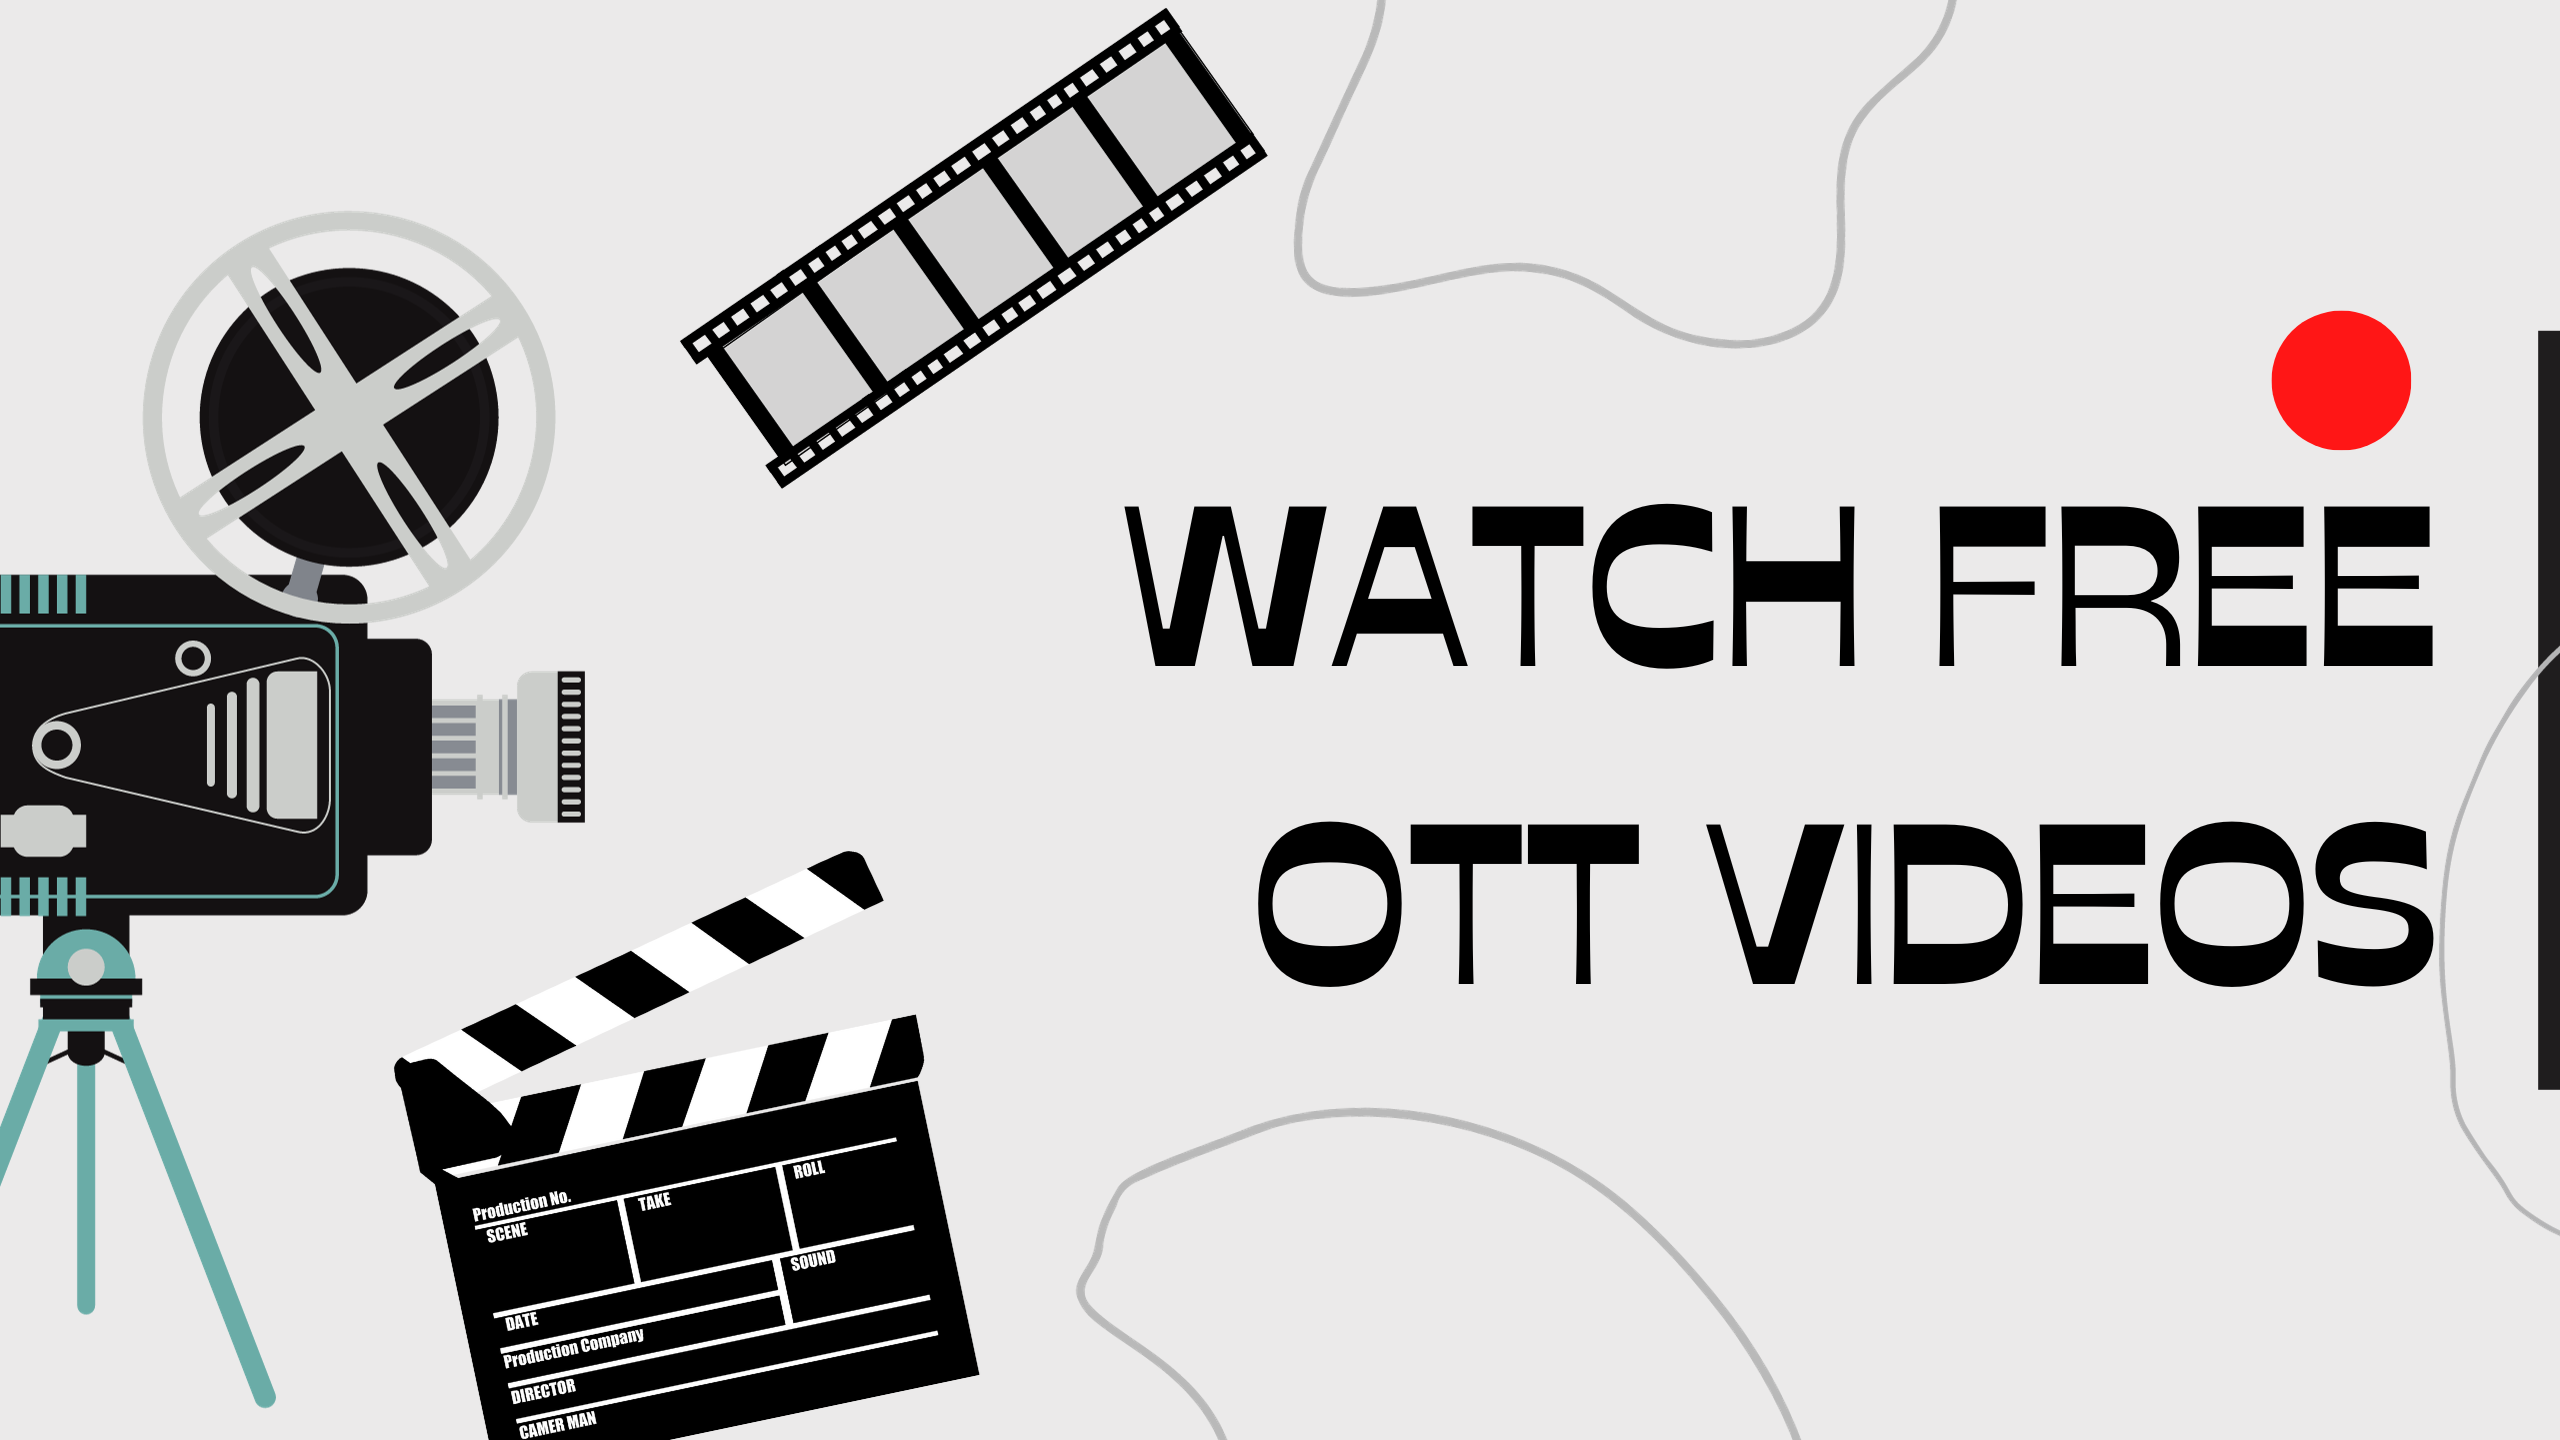 Watch Free OTT Videos – Part 2